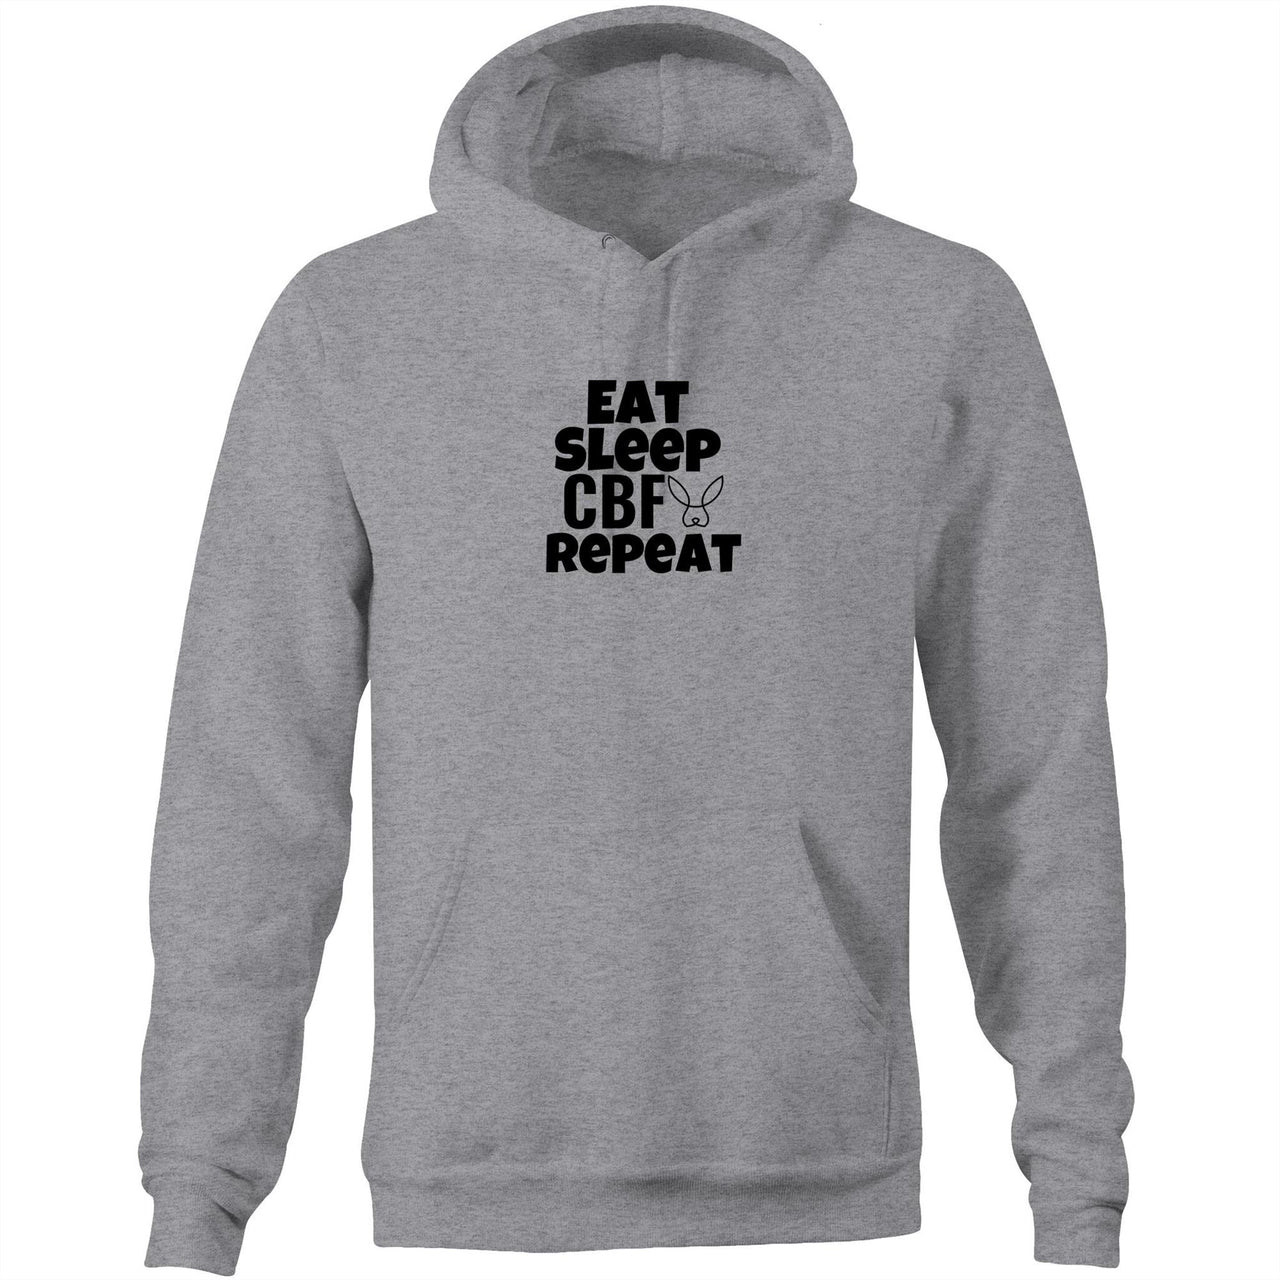 Eat Sleep CBF Repeat Pocket Hoodie Sweatshirt grey marle by CBF Clothing